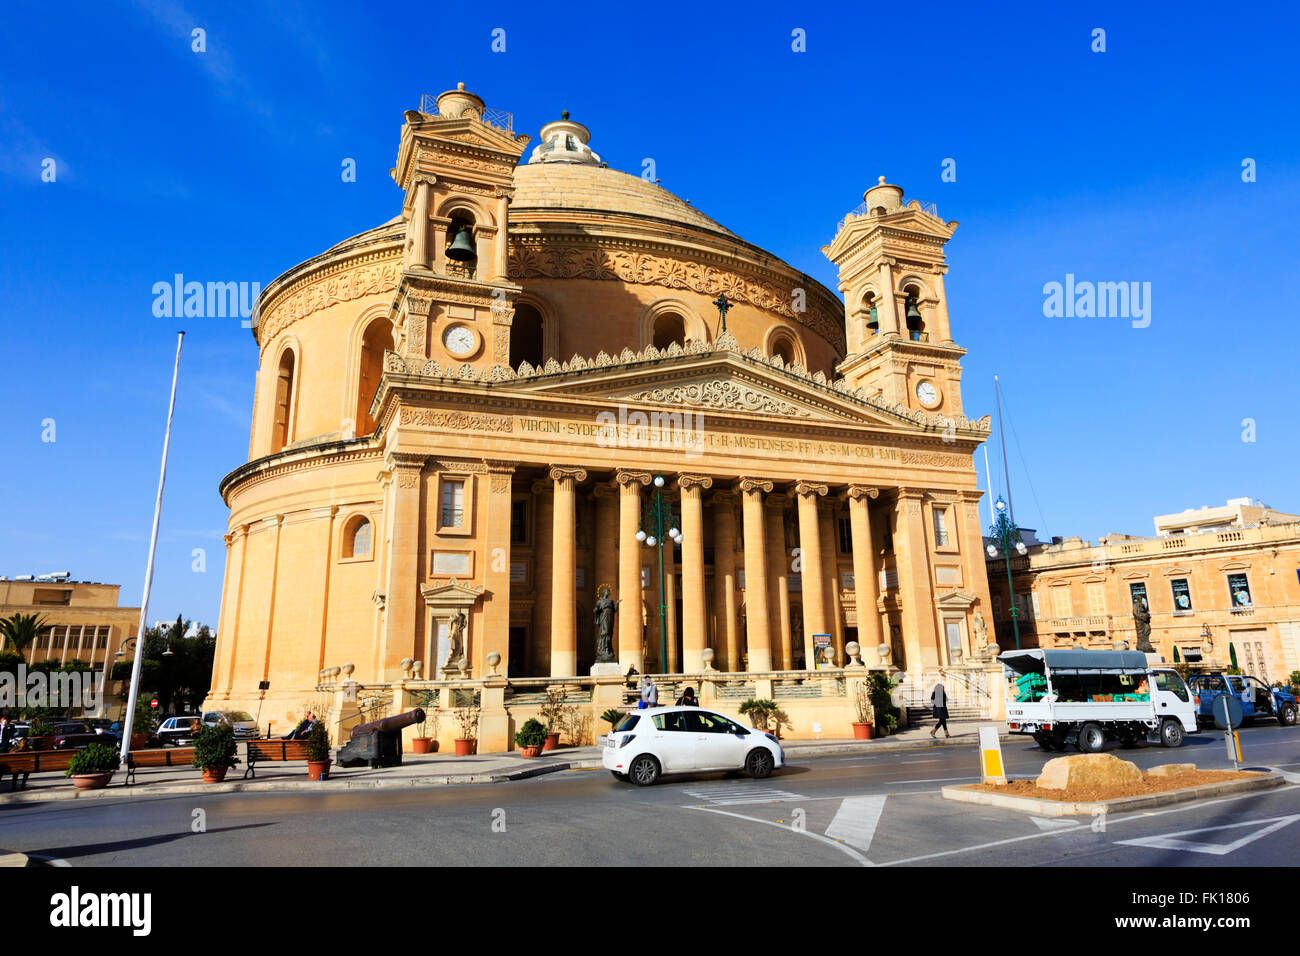 Die Kirche der Annahme von Notre-Dame, Mosta Rotunda oder Mosta Dome genannt. Stockfoto